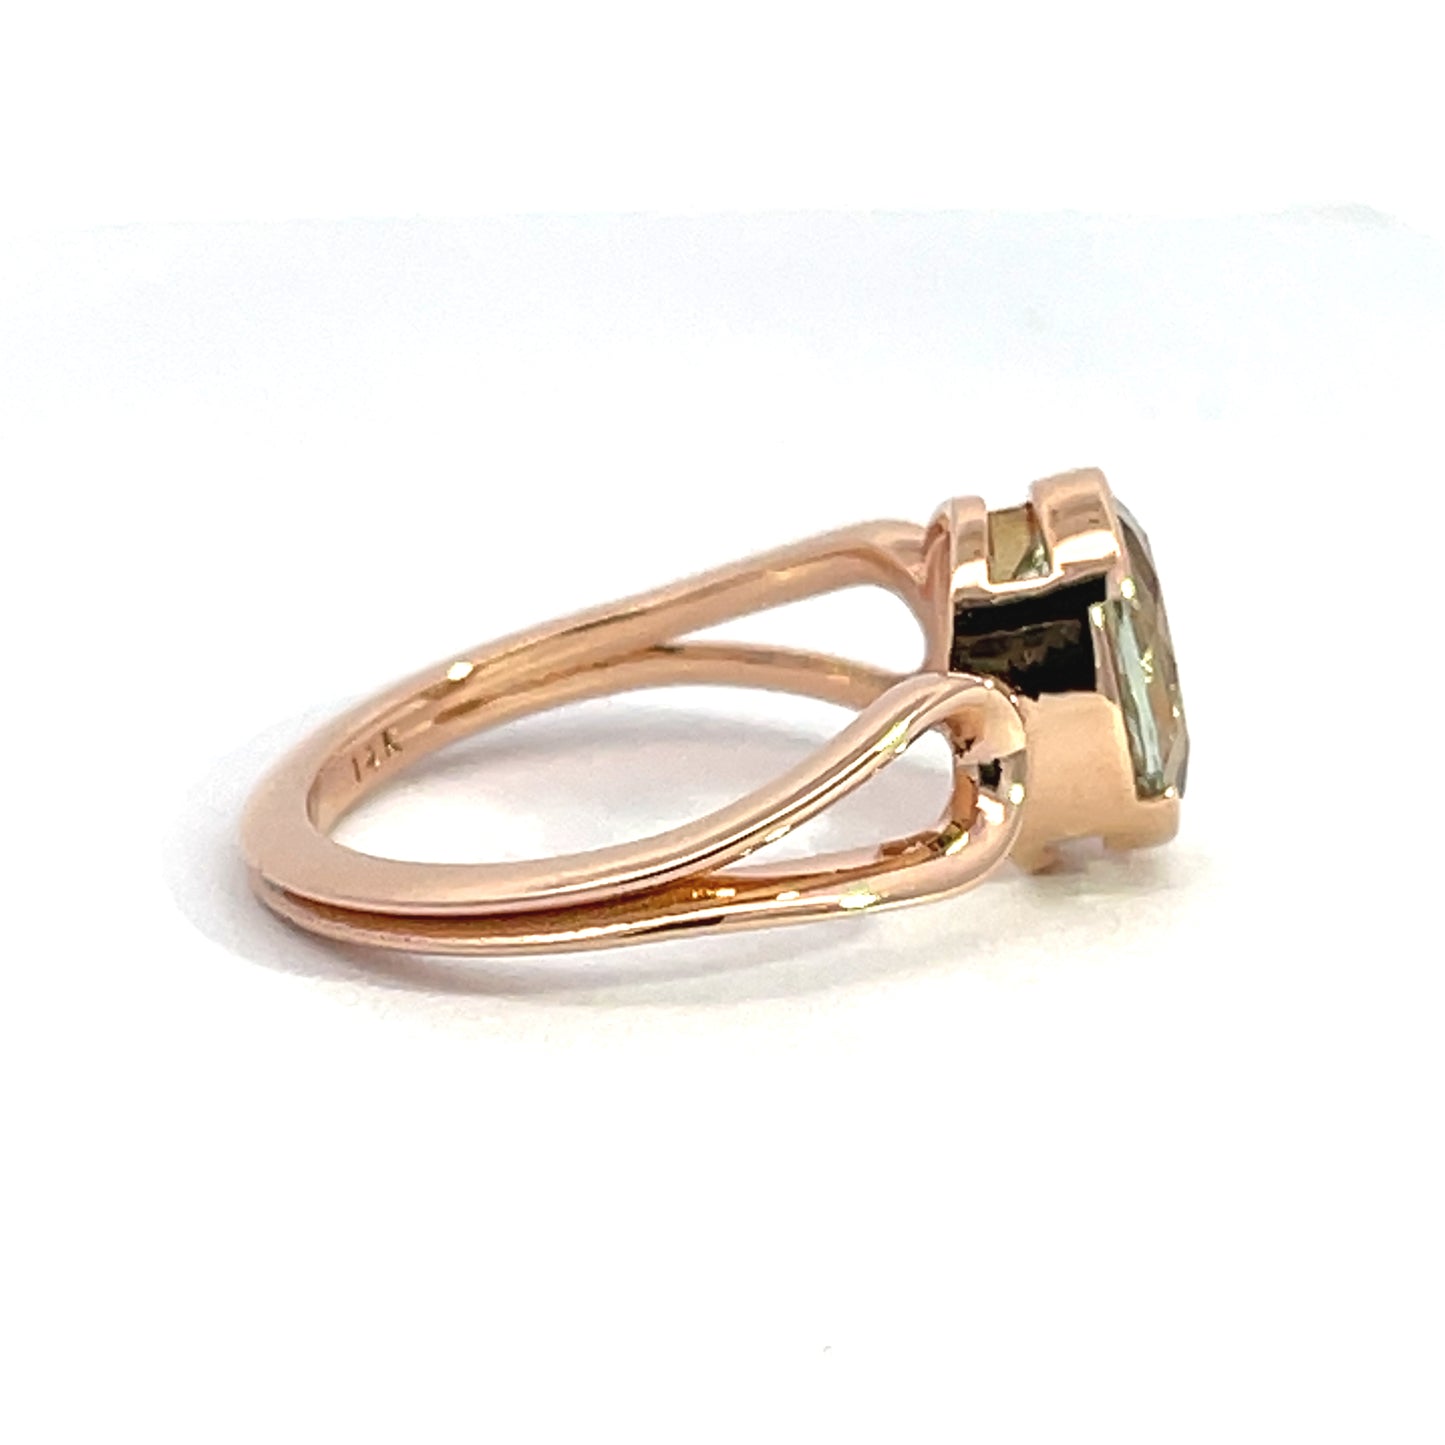 14k Rose Gold Green Quartz Ring